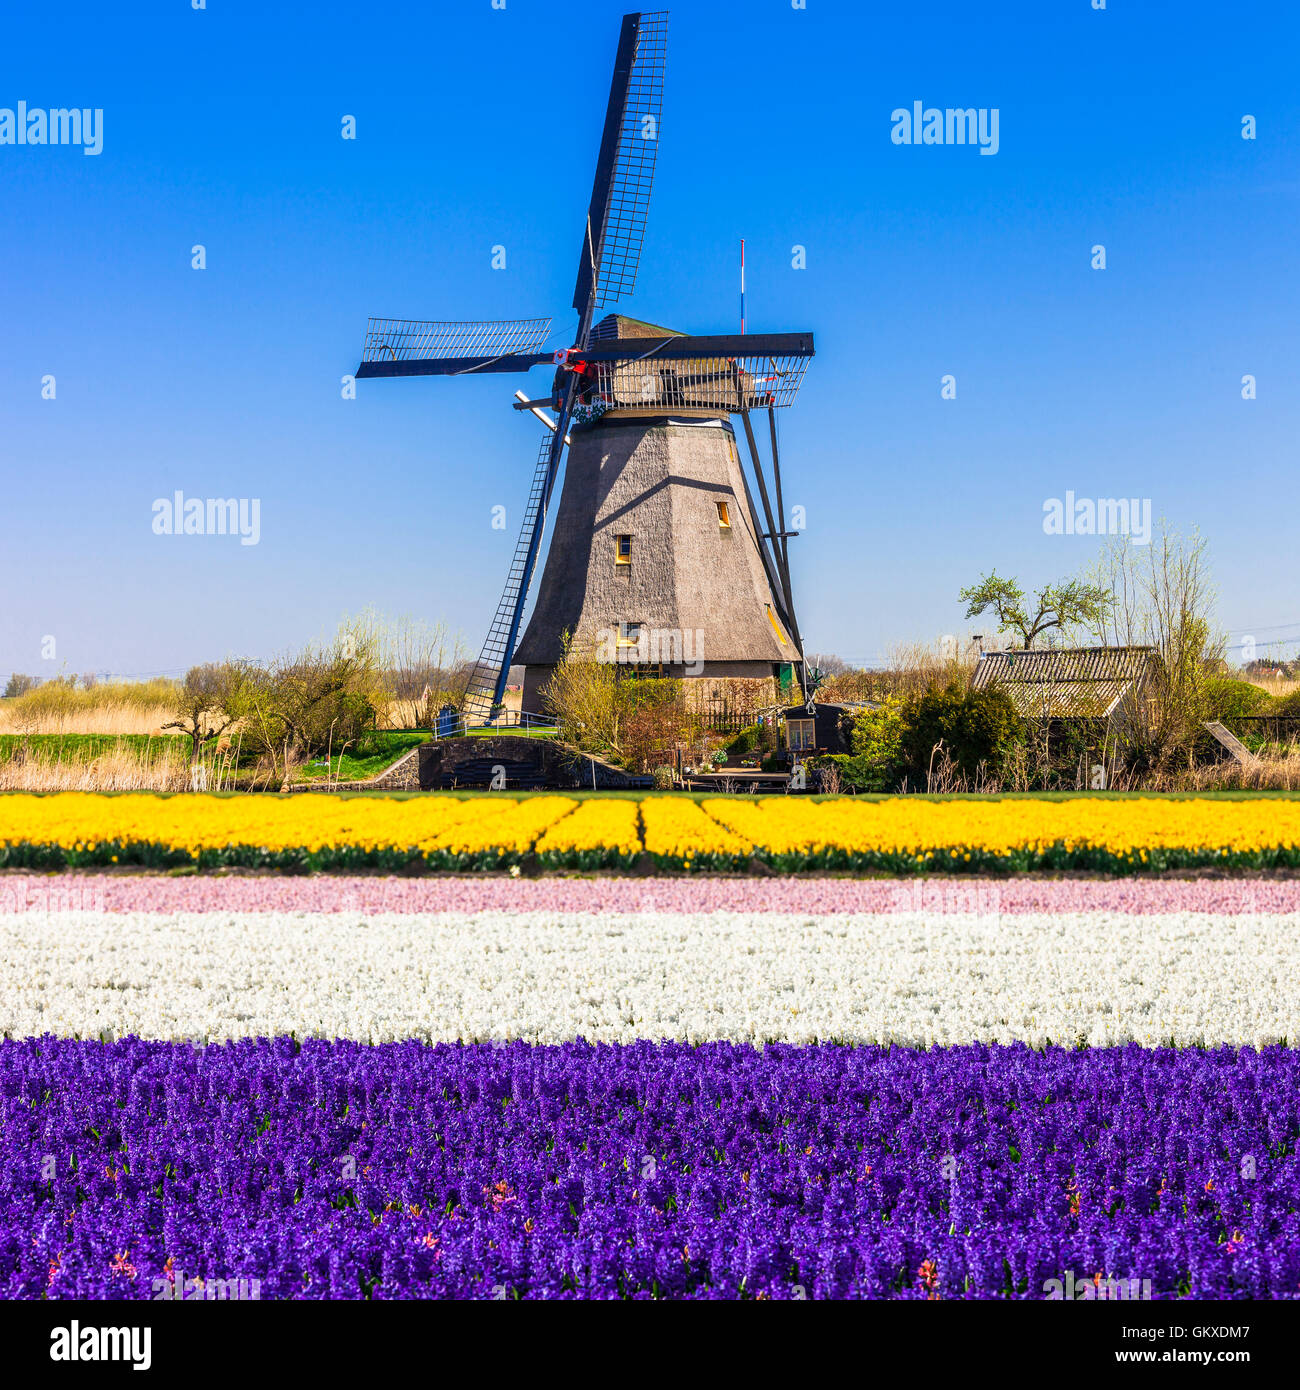 Traditionelle Holland Landschaft - Feld von Zwiebelblumen und Windmühle Stockfoto